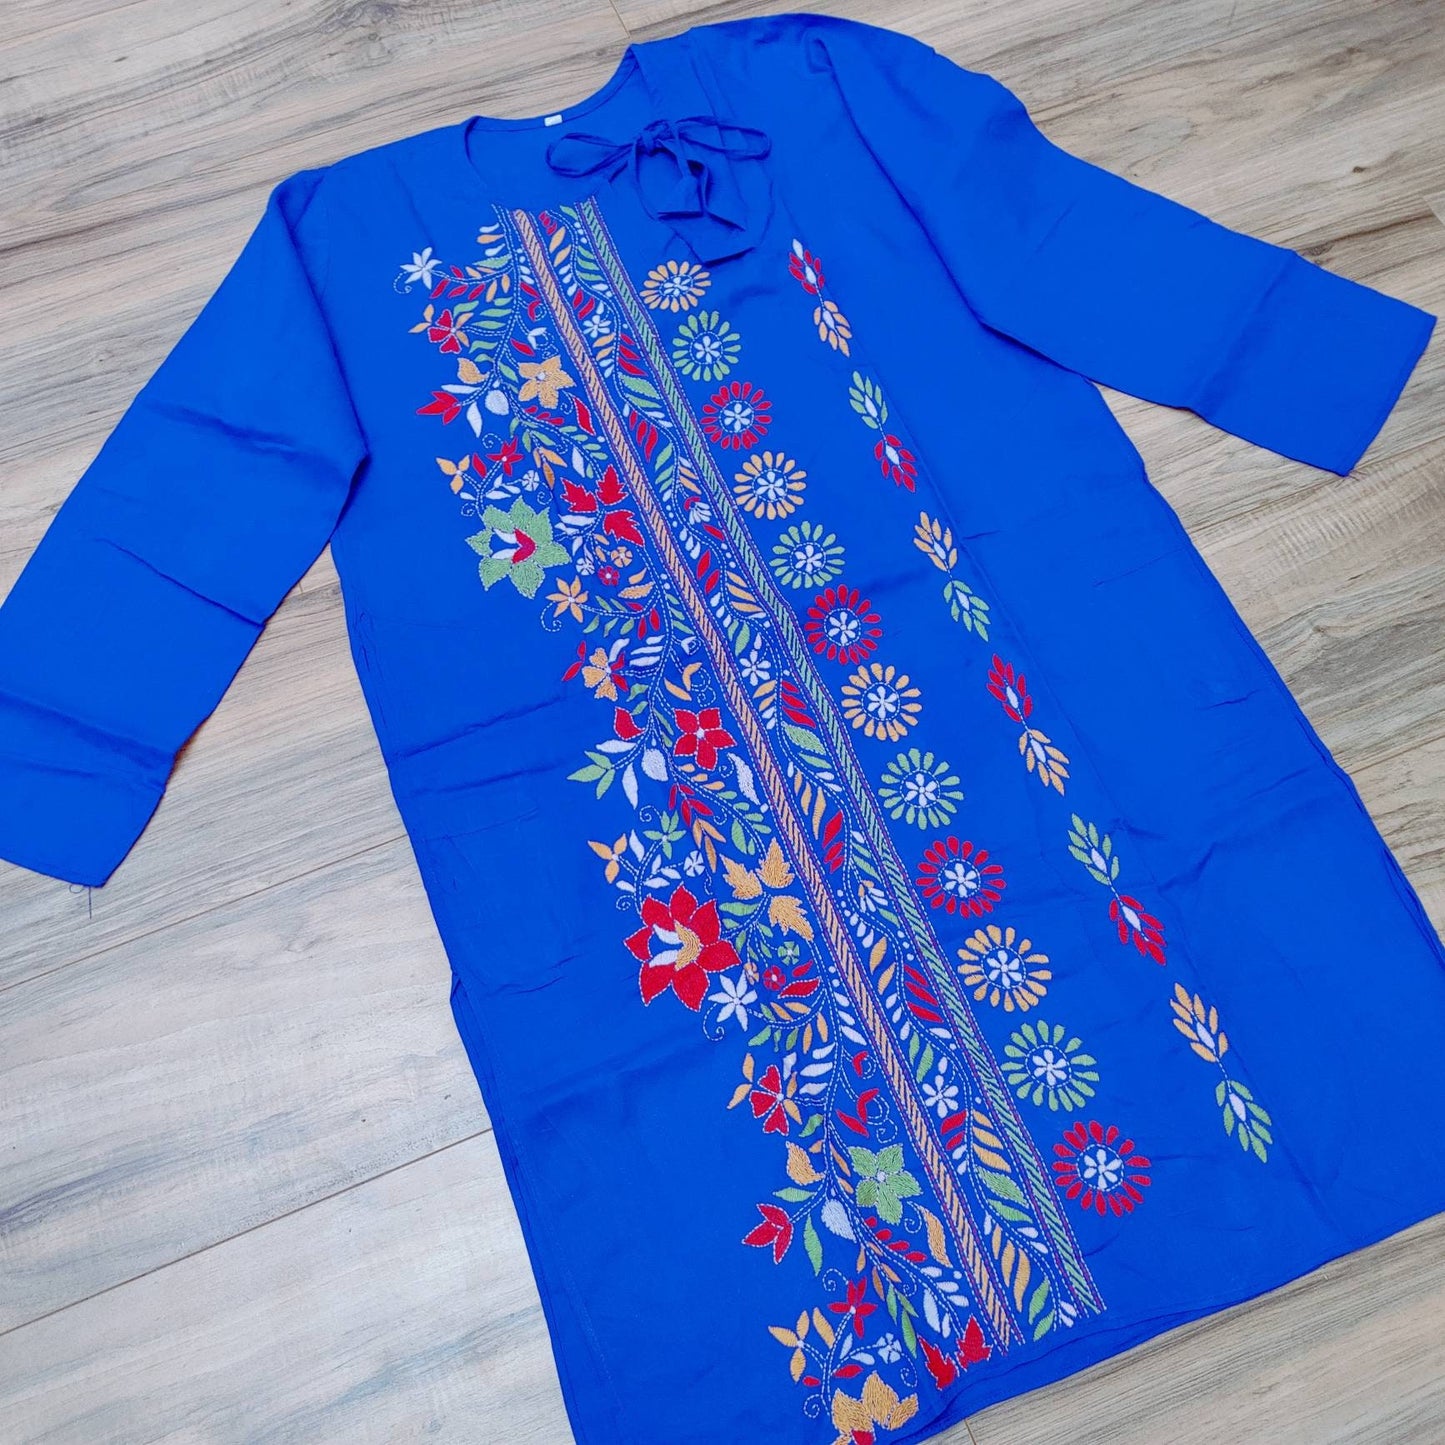 Blue Punjabi, Puja Special Punjabi, Hand Kantha Stitch Cotton Punjabi, Kurtas for Men, Indian Bengali Traditional Dress, Size 44 (Slim)